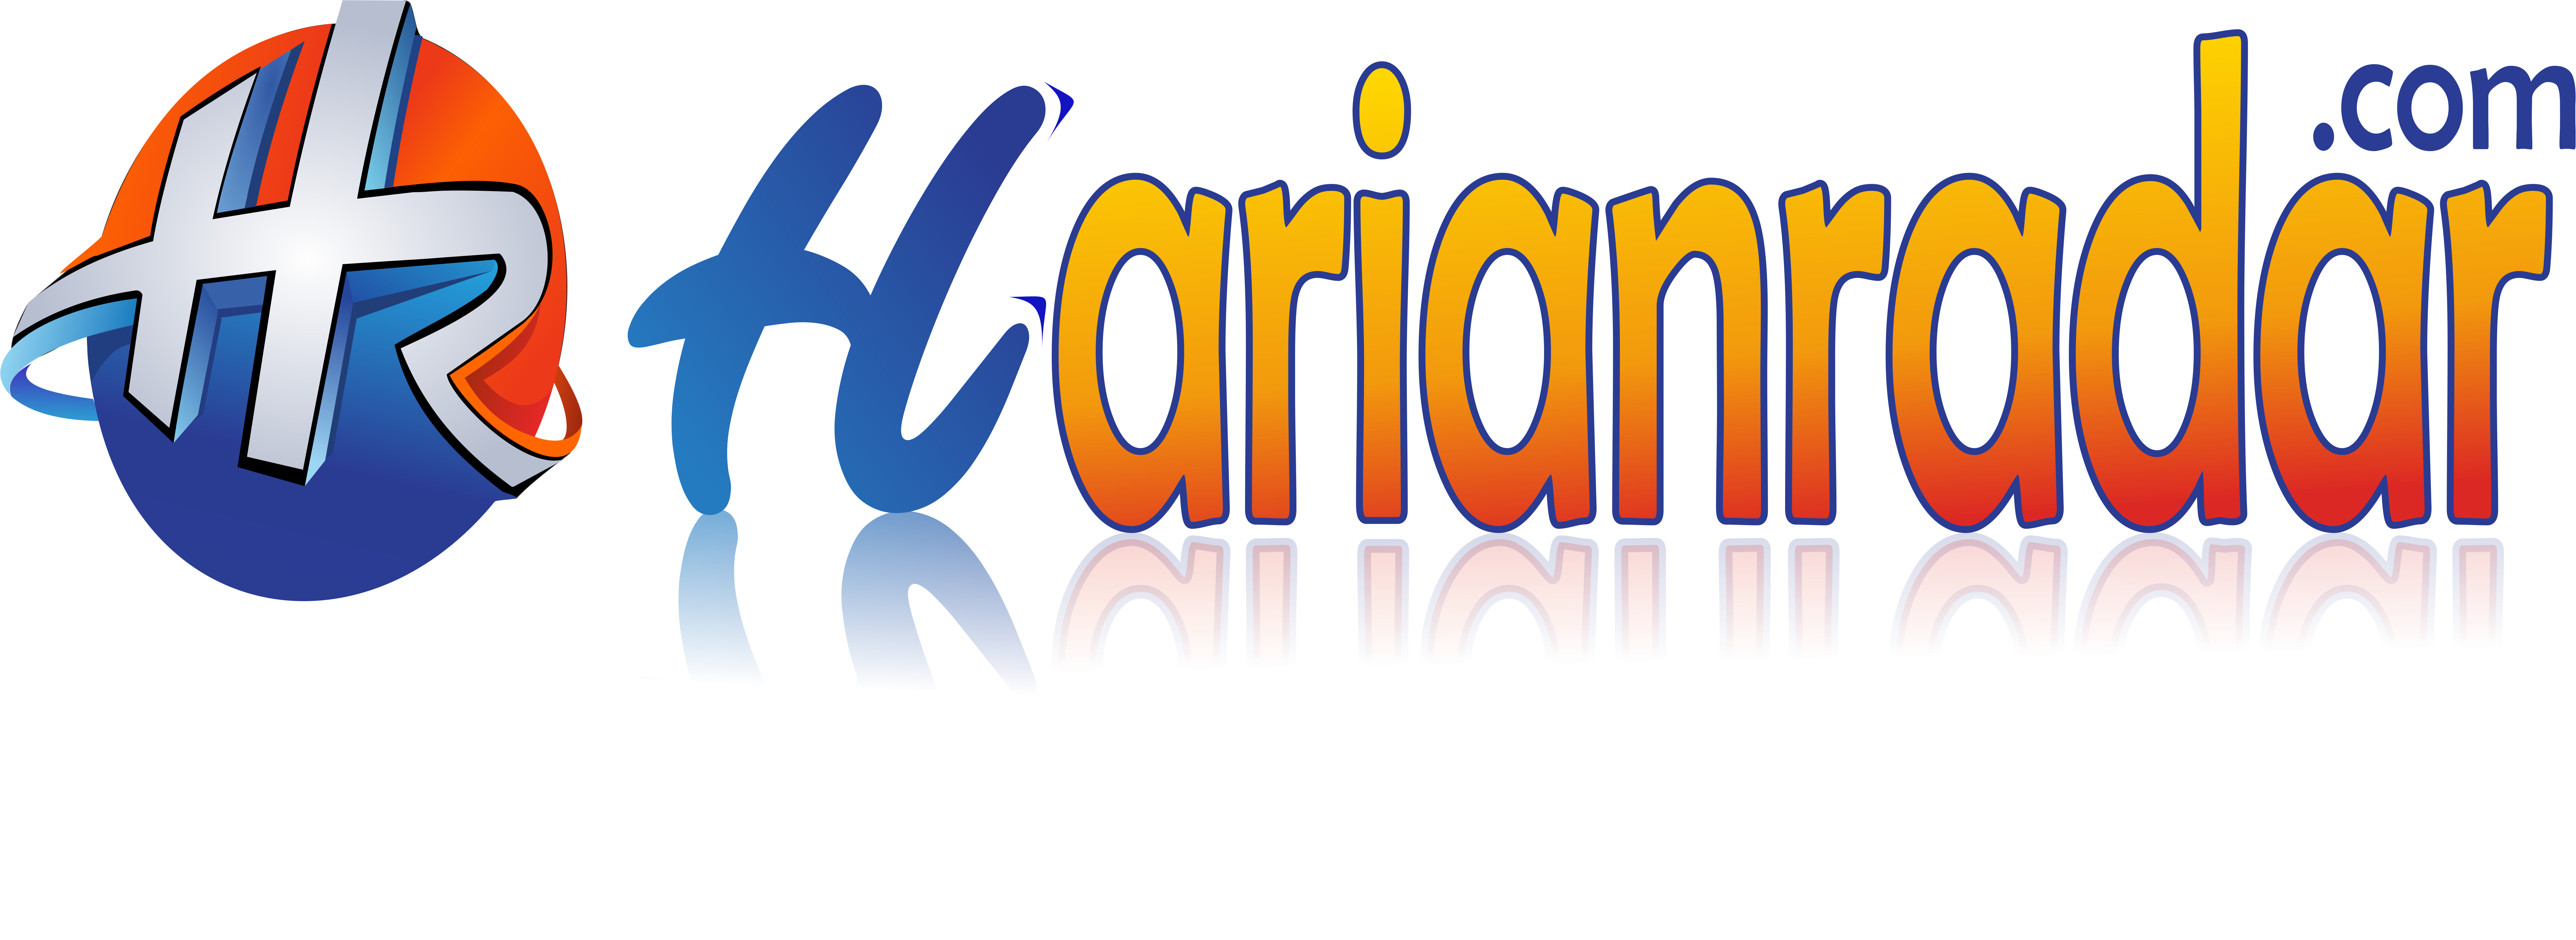 Harianradar.com